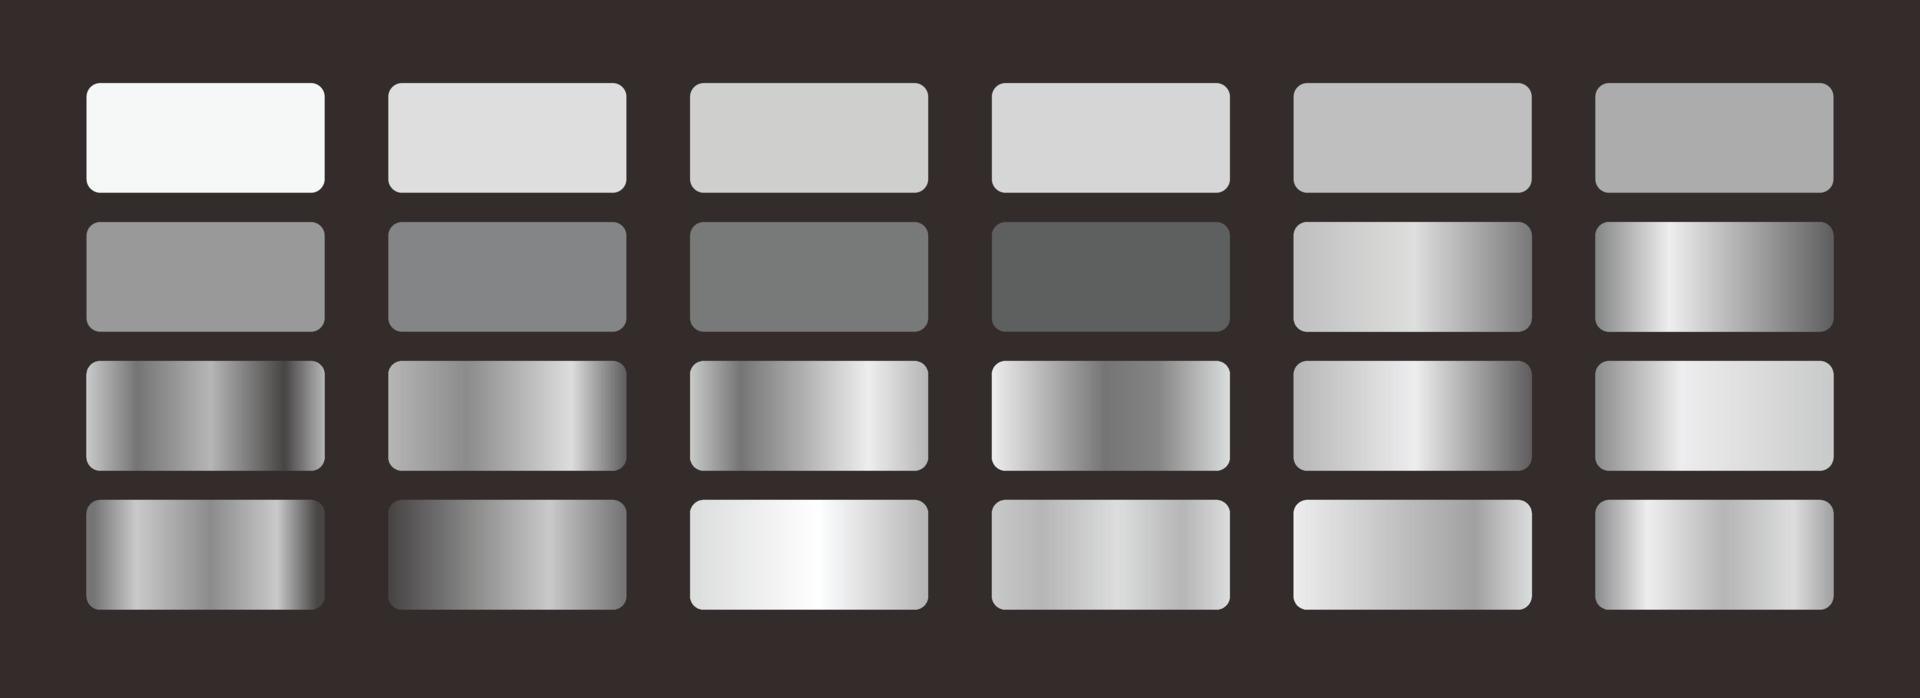 definir ilustração vetorial de coleção de cores gradiente prata eps10 vetor